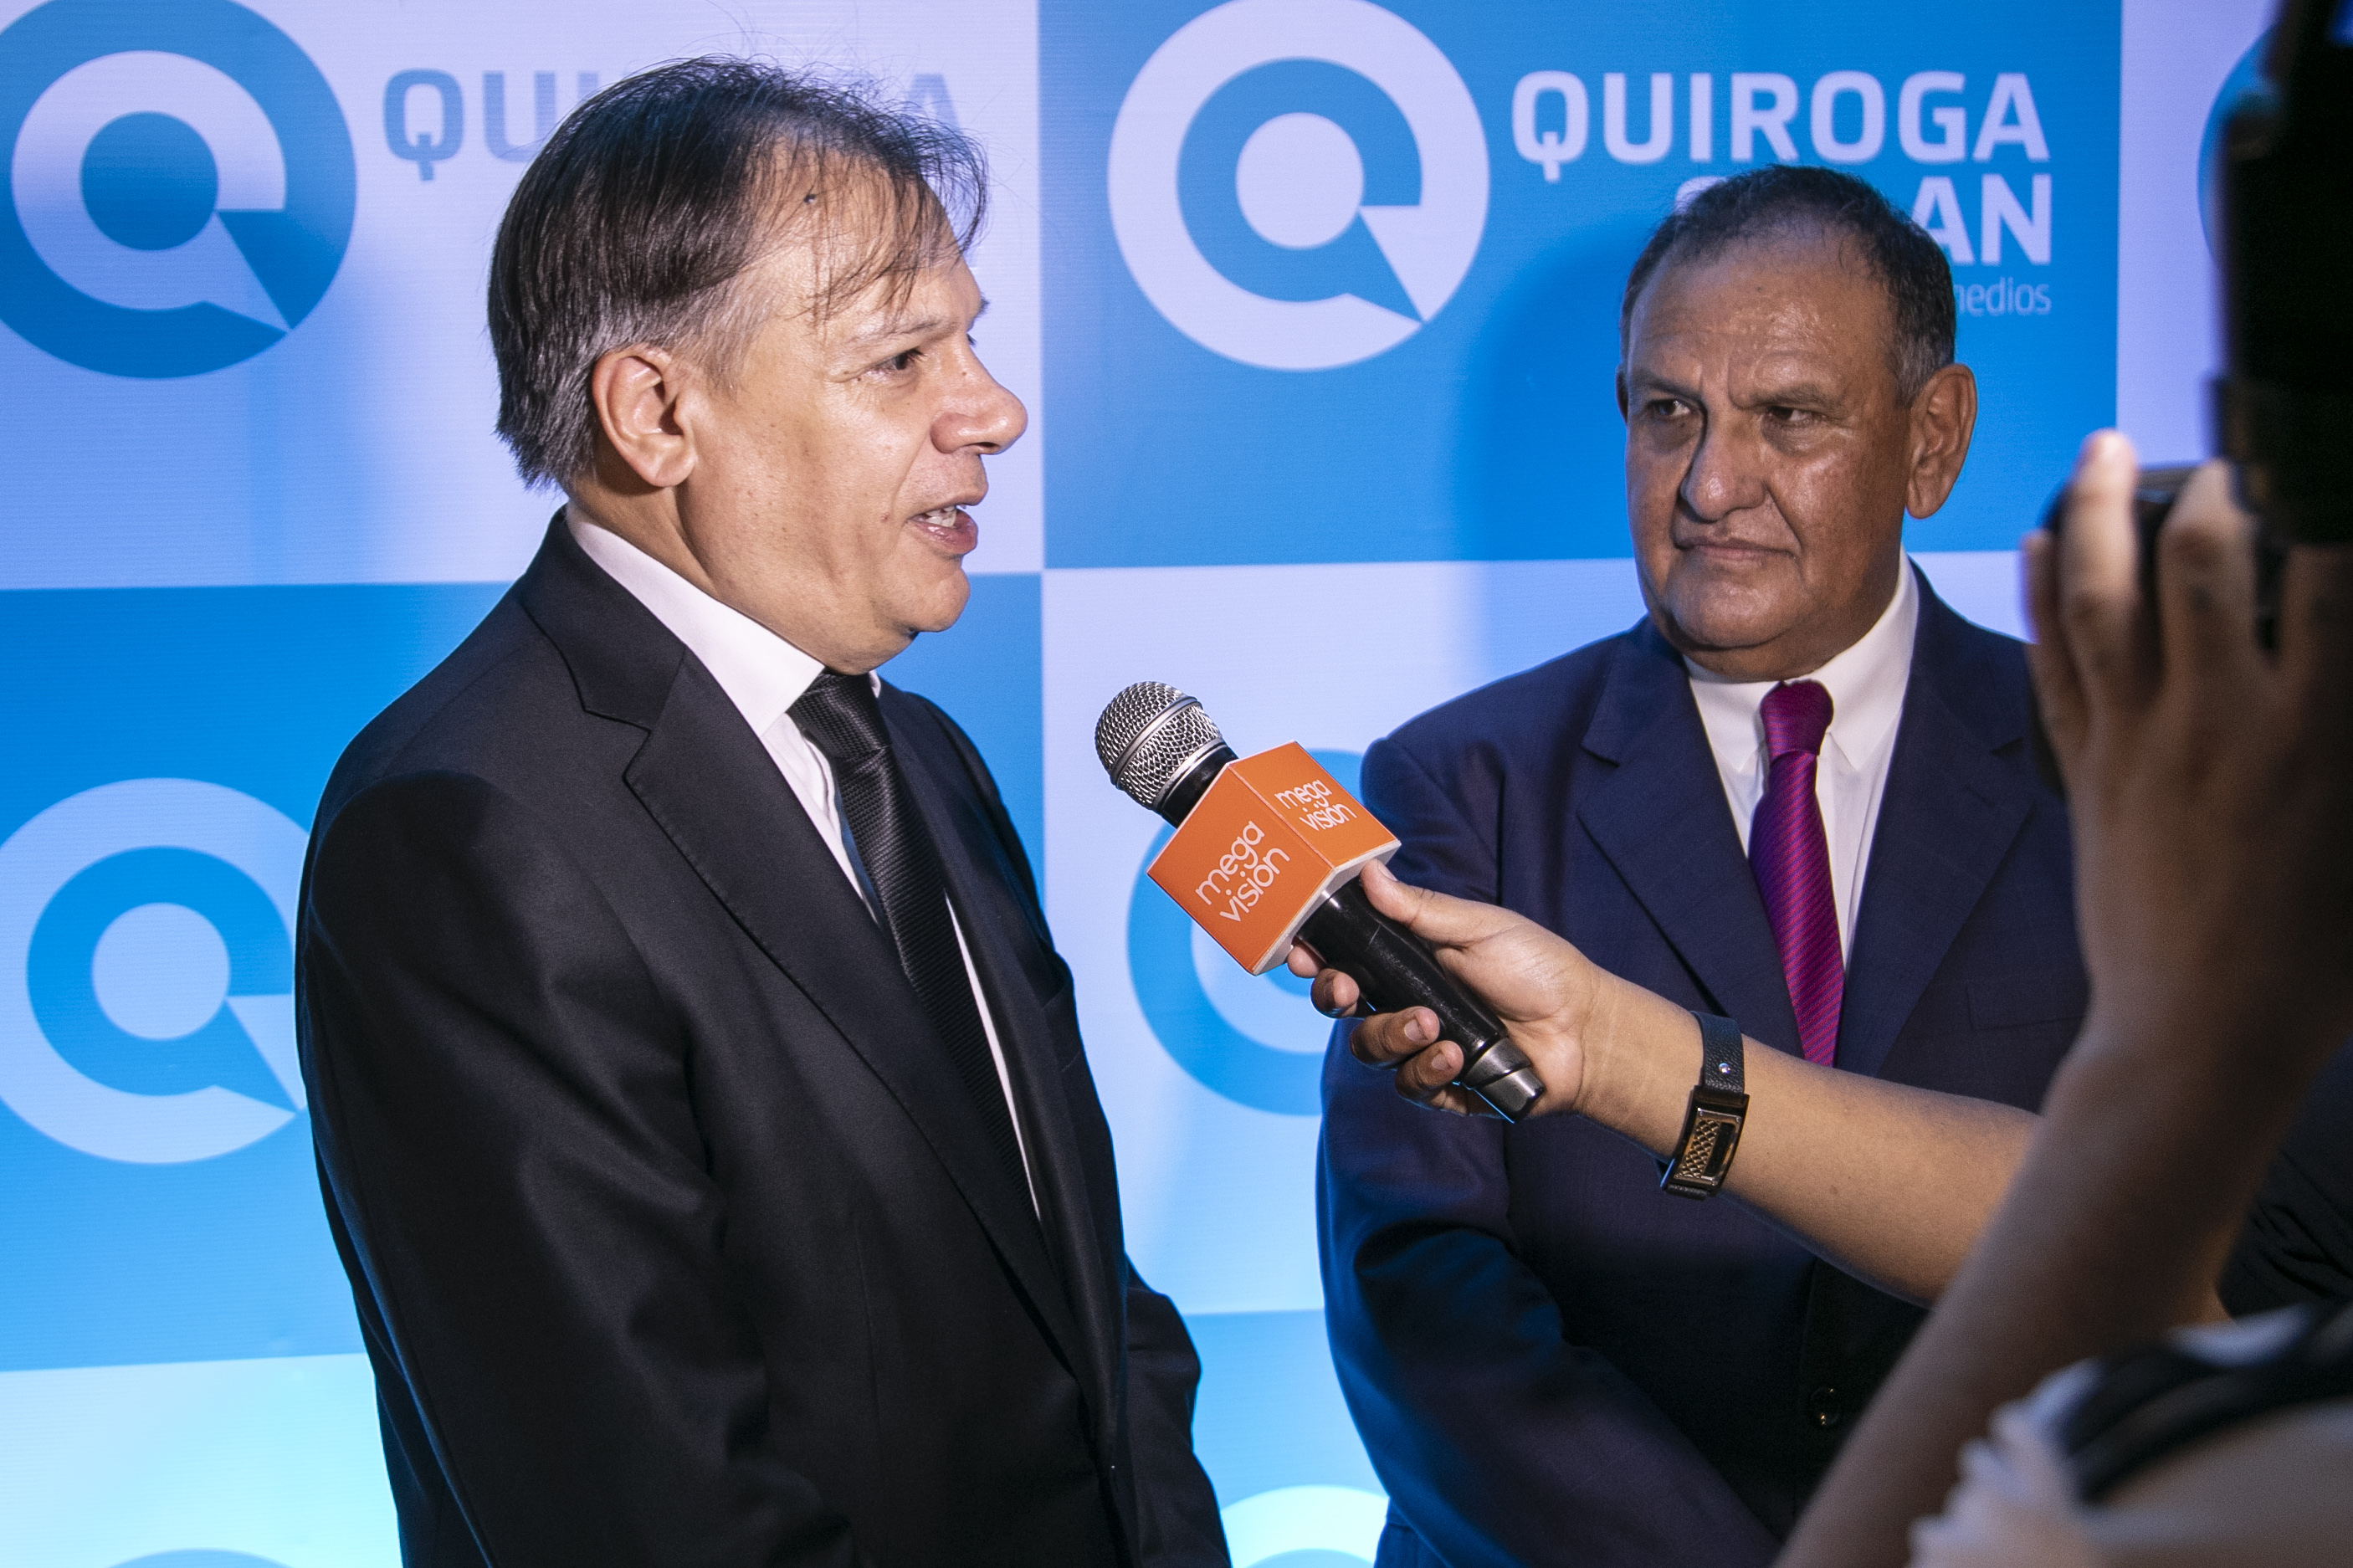 Juan Ortega Landa: “Nos aliamos con Quiroga Medios para revolucionar el mercado de la inversión publicitaria